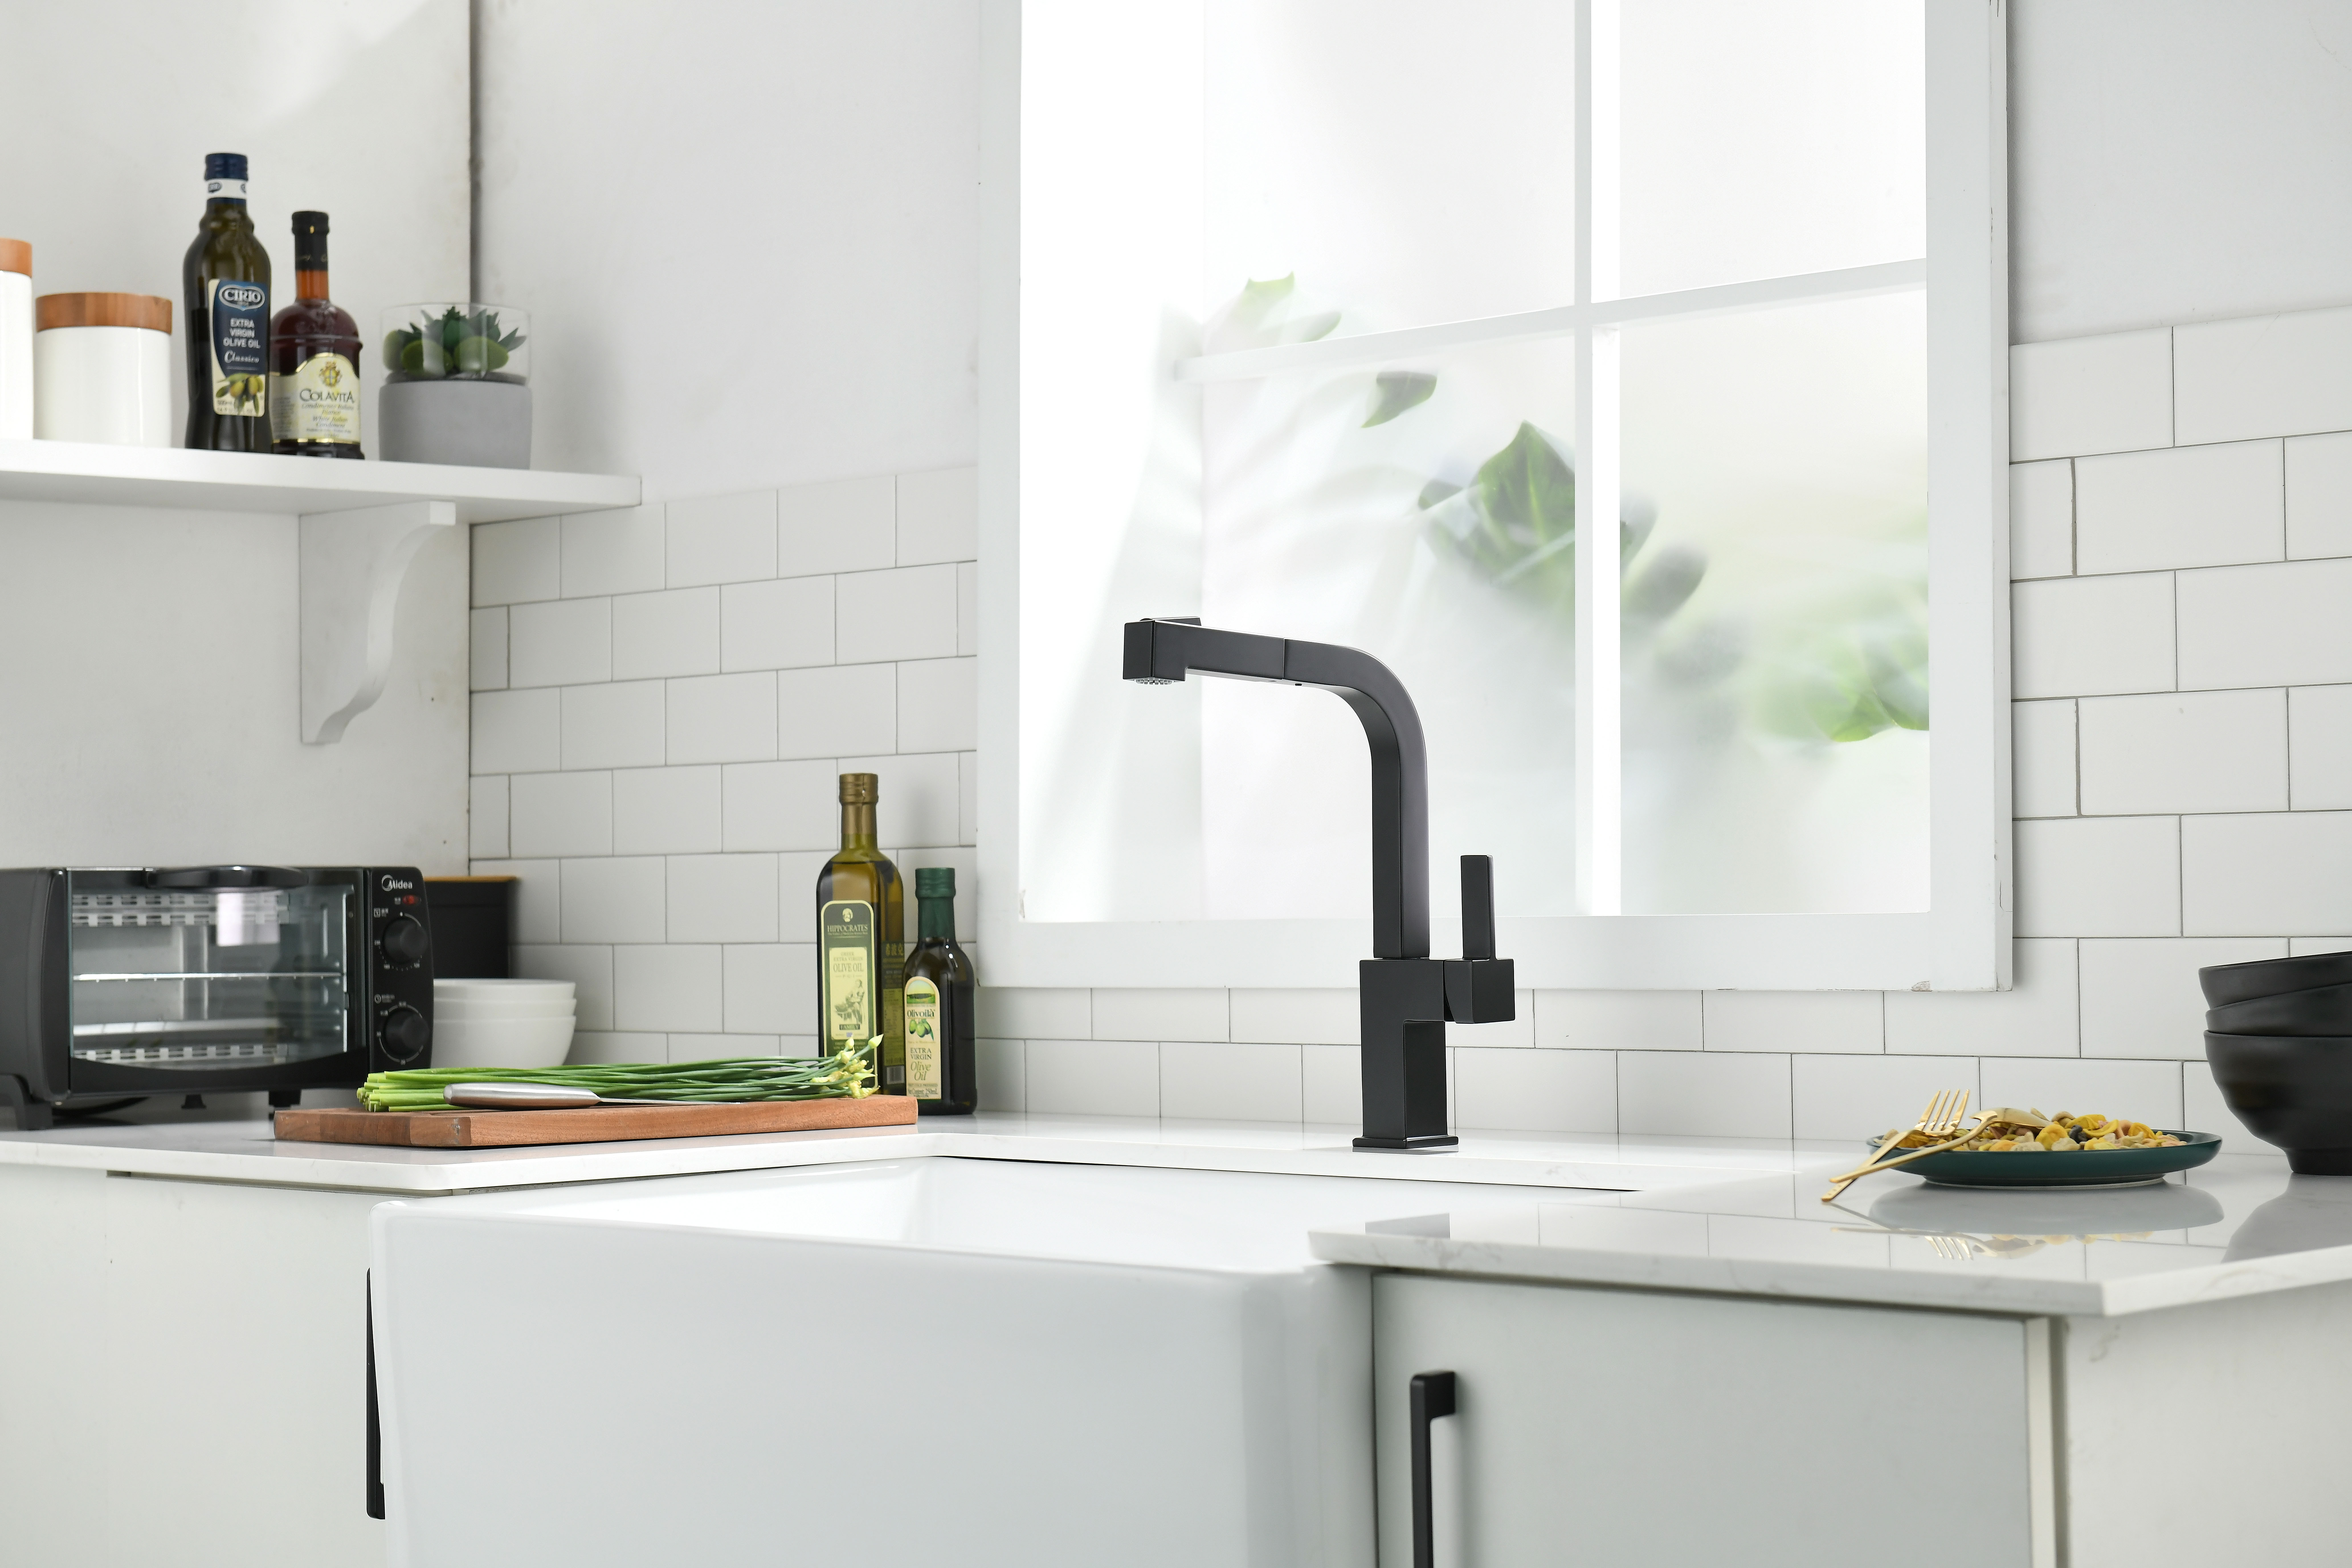 Robinets de cuisine noirs vs robinets de cuisine dorés : choisir le bon style pour votre cuisine